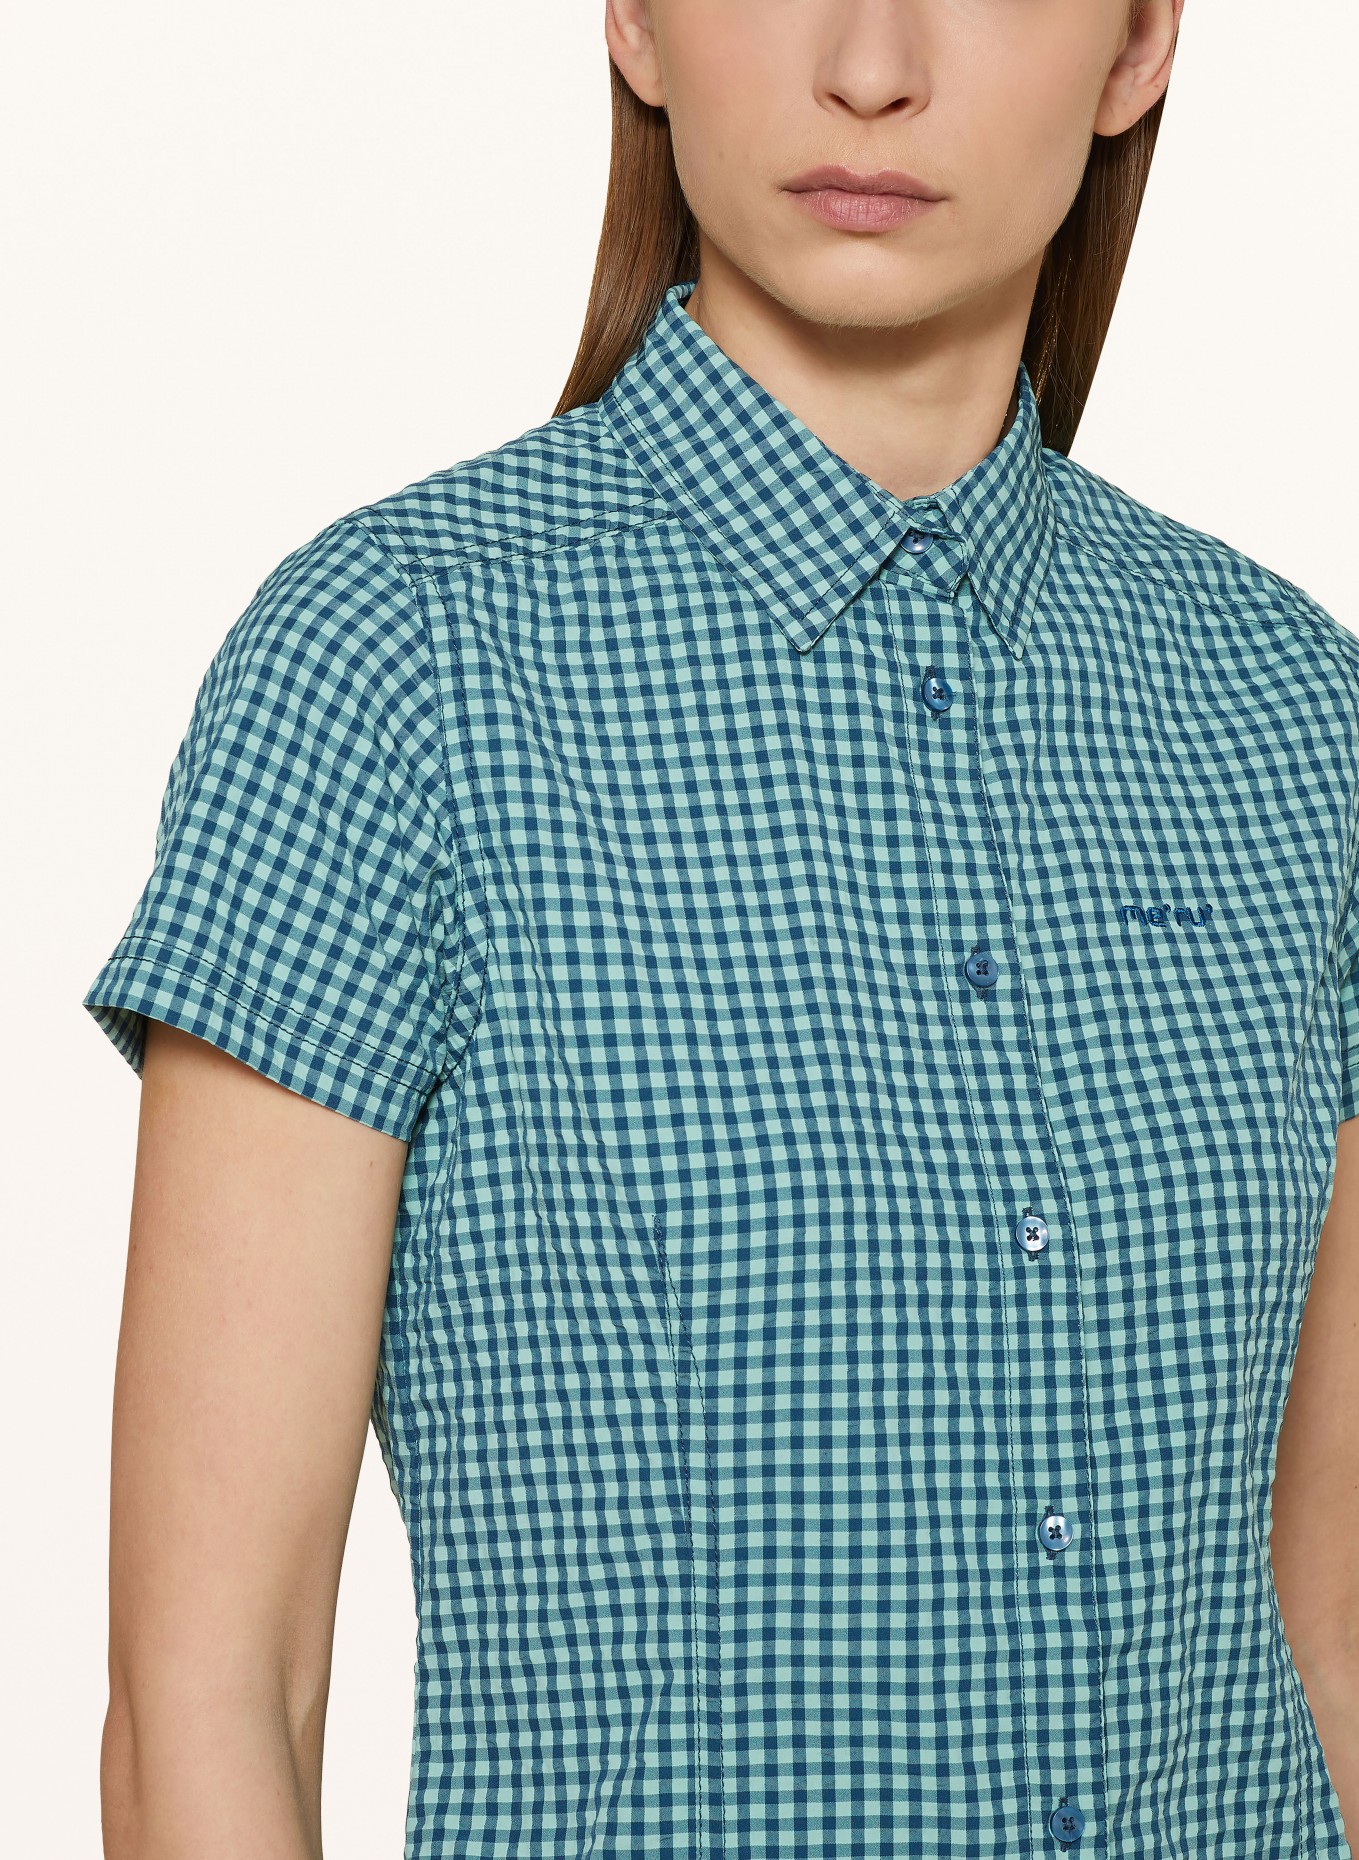 me°ru' Outdoor blouse OTTA, Color: MINT/ BLUE (Image 4)